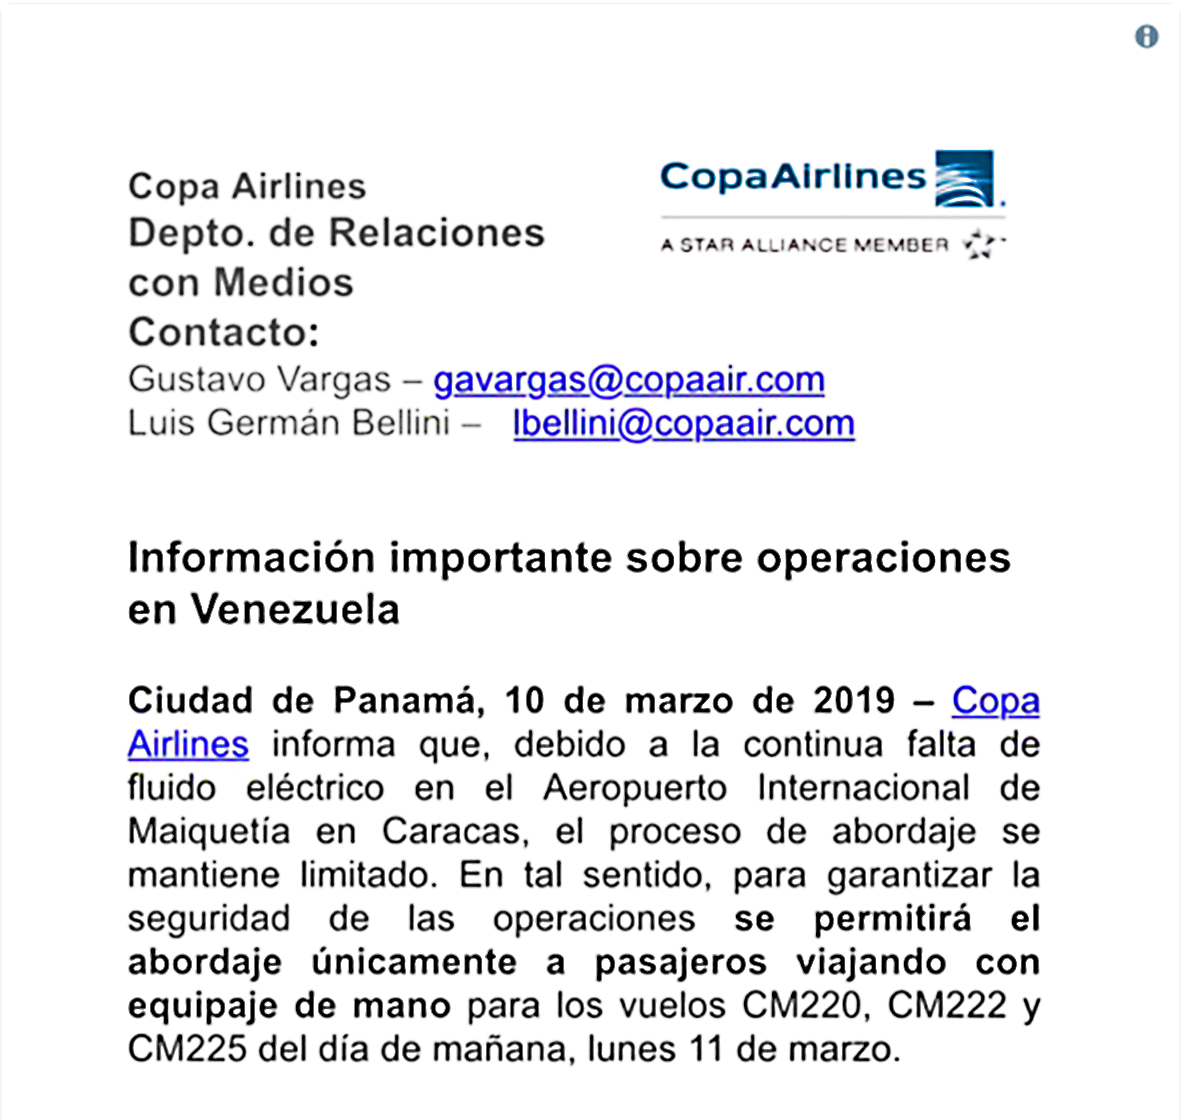 Copa Airlines solamente permitirá abordaje con equipaje de Diario Avance